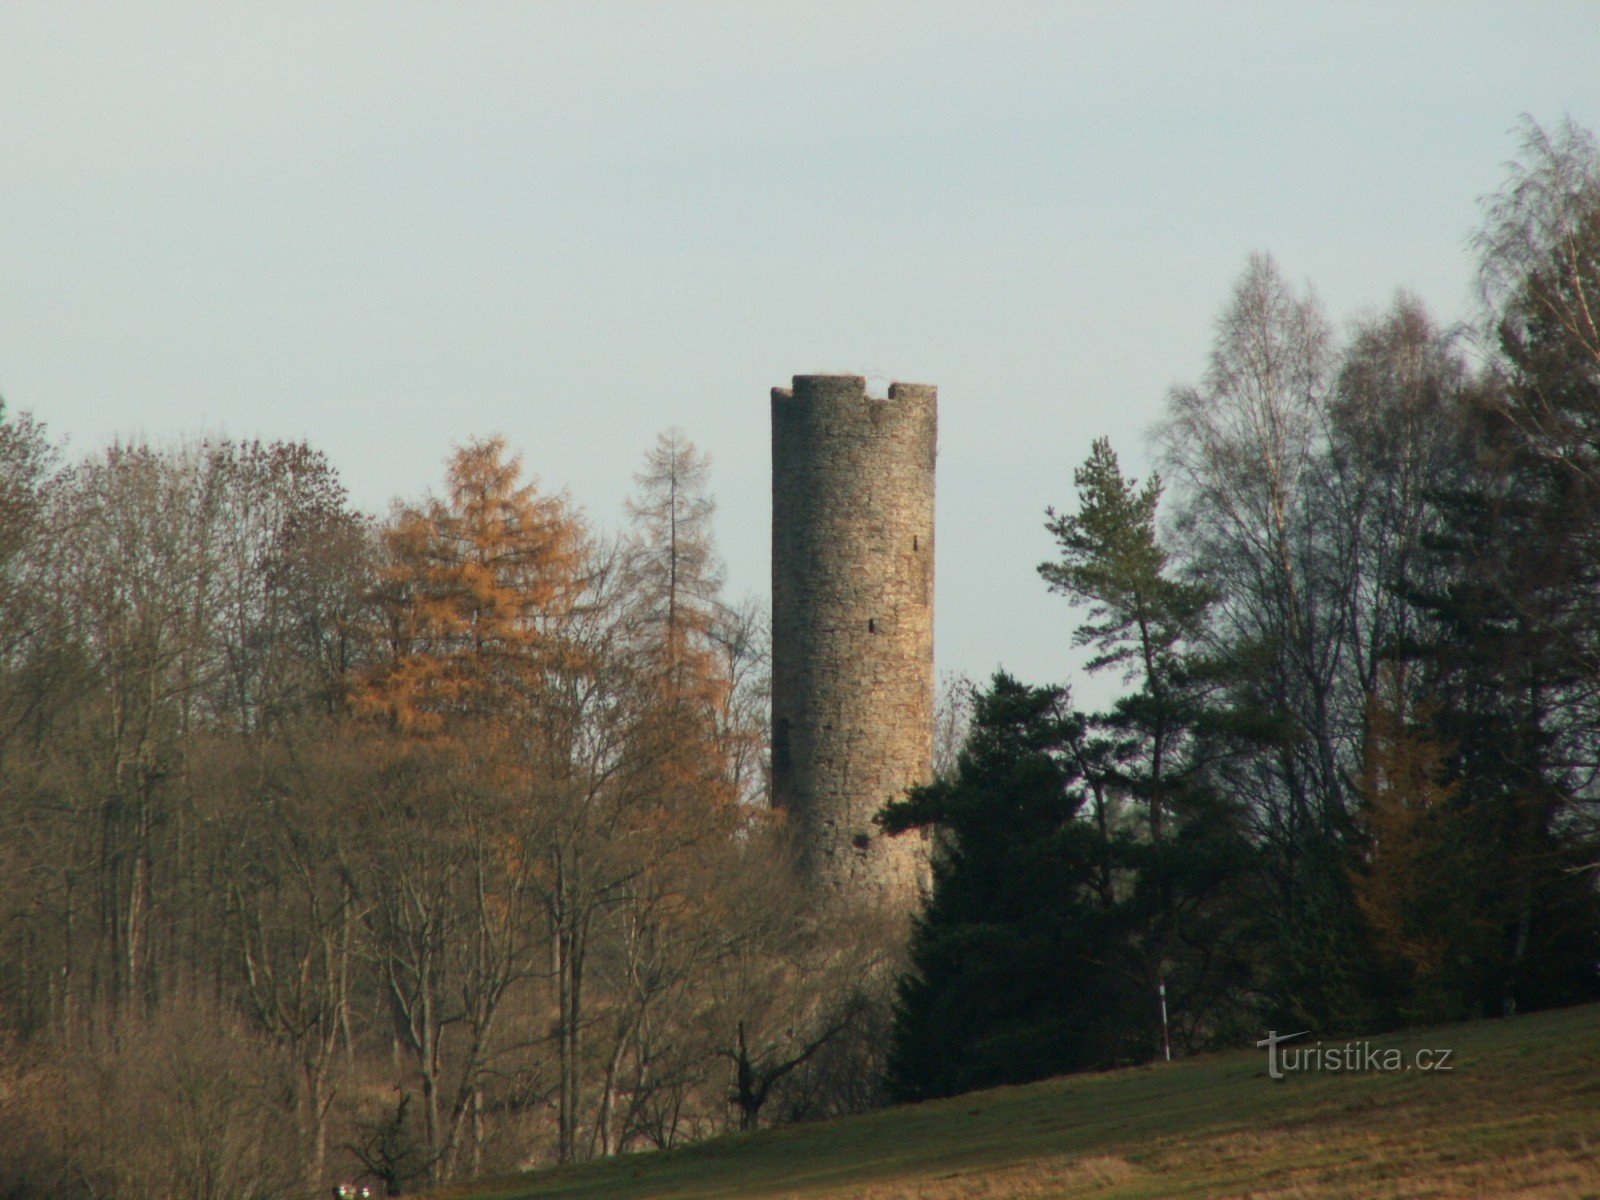 Wieża dawnego zamku Neuberg